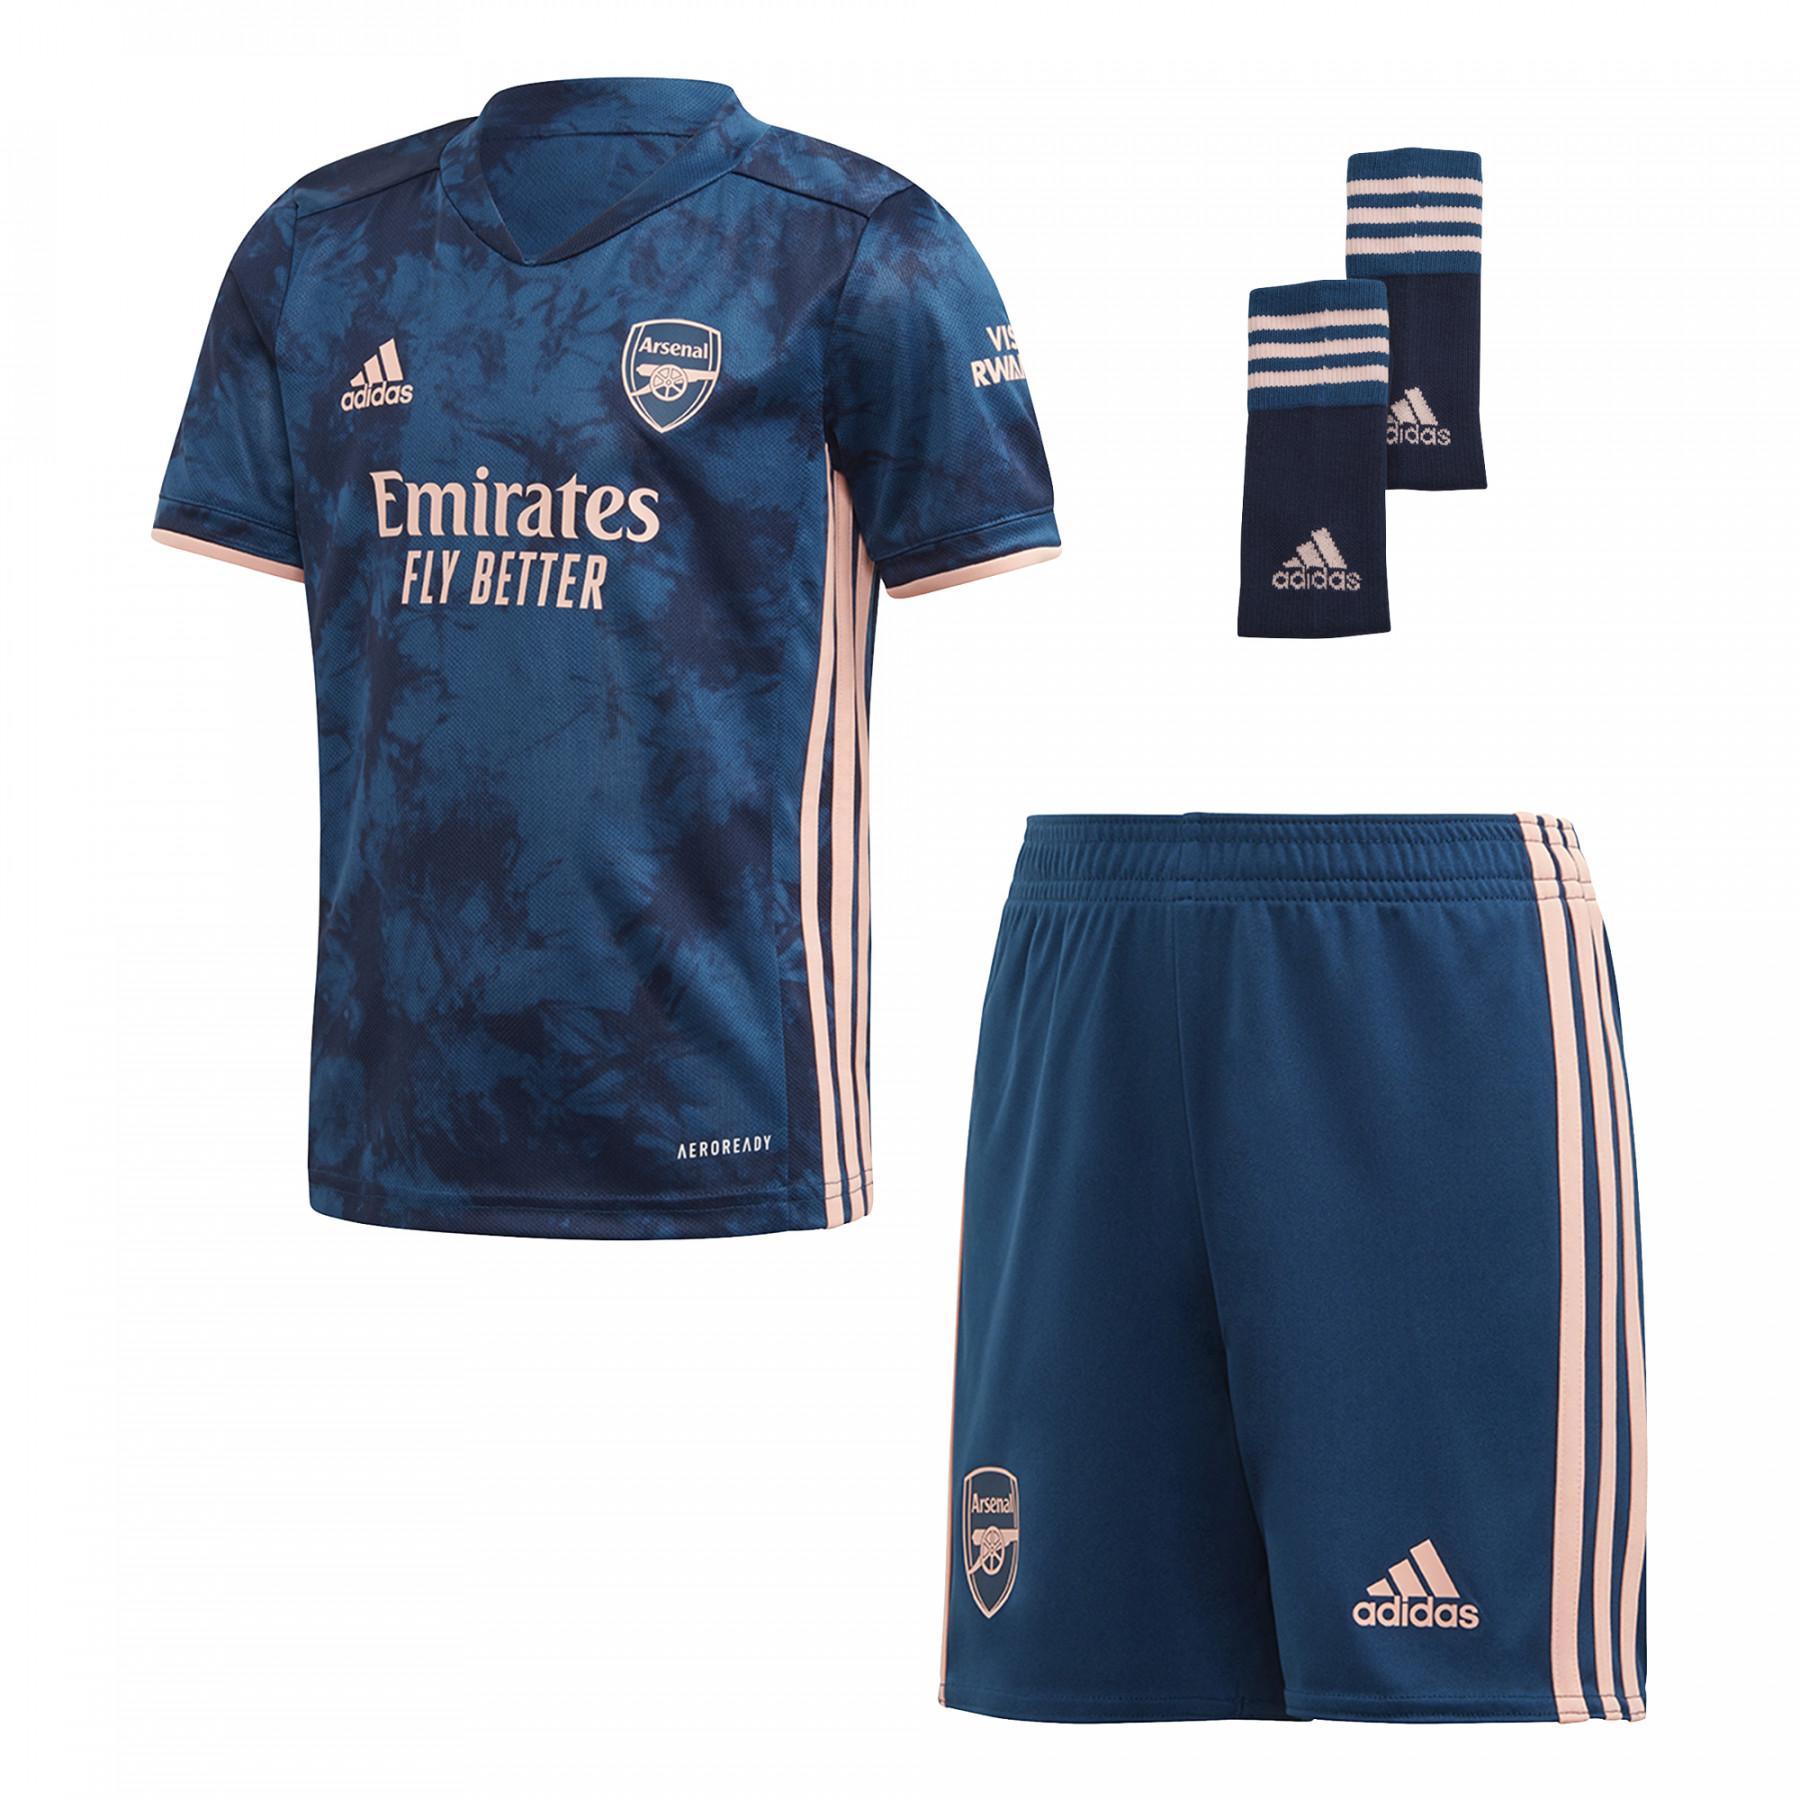 Mini-kit kind derde Arsenal FC 2020/21